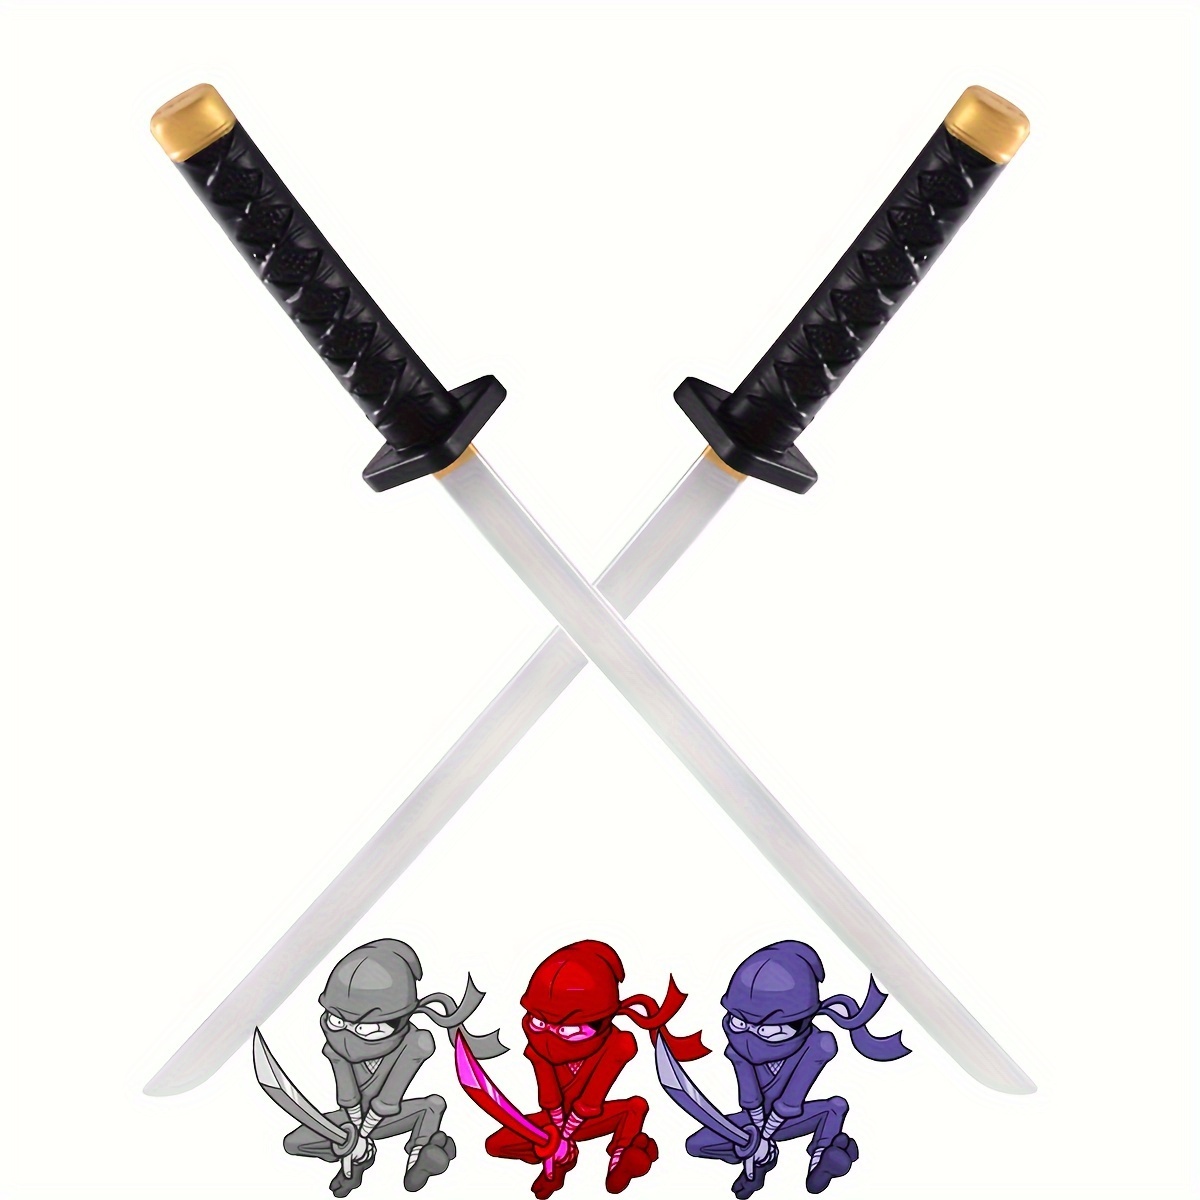 Ninja Sword and Knifes Set.